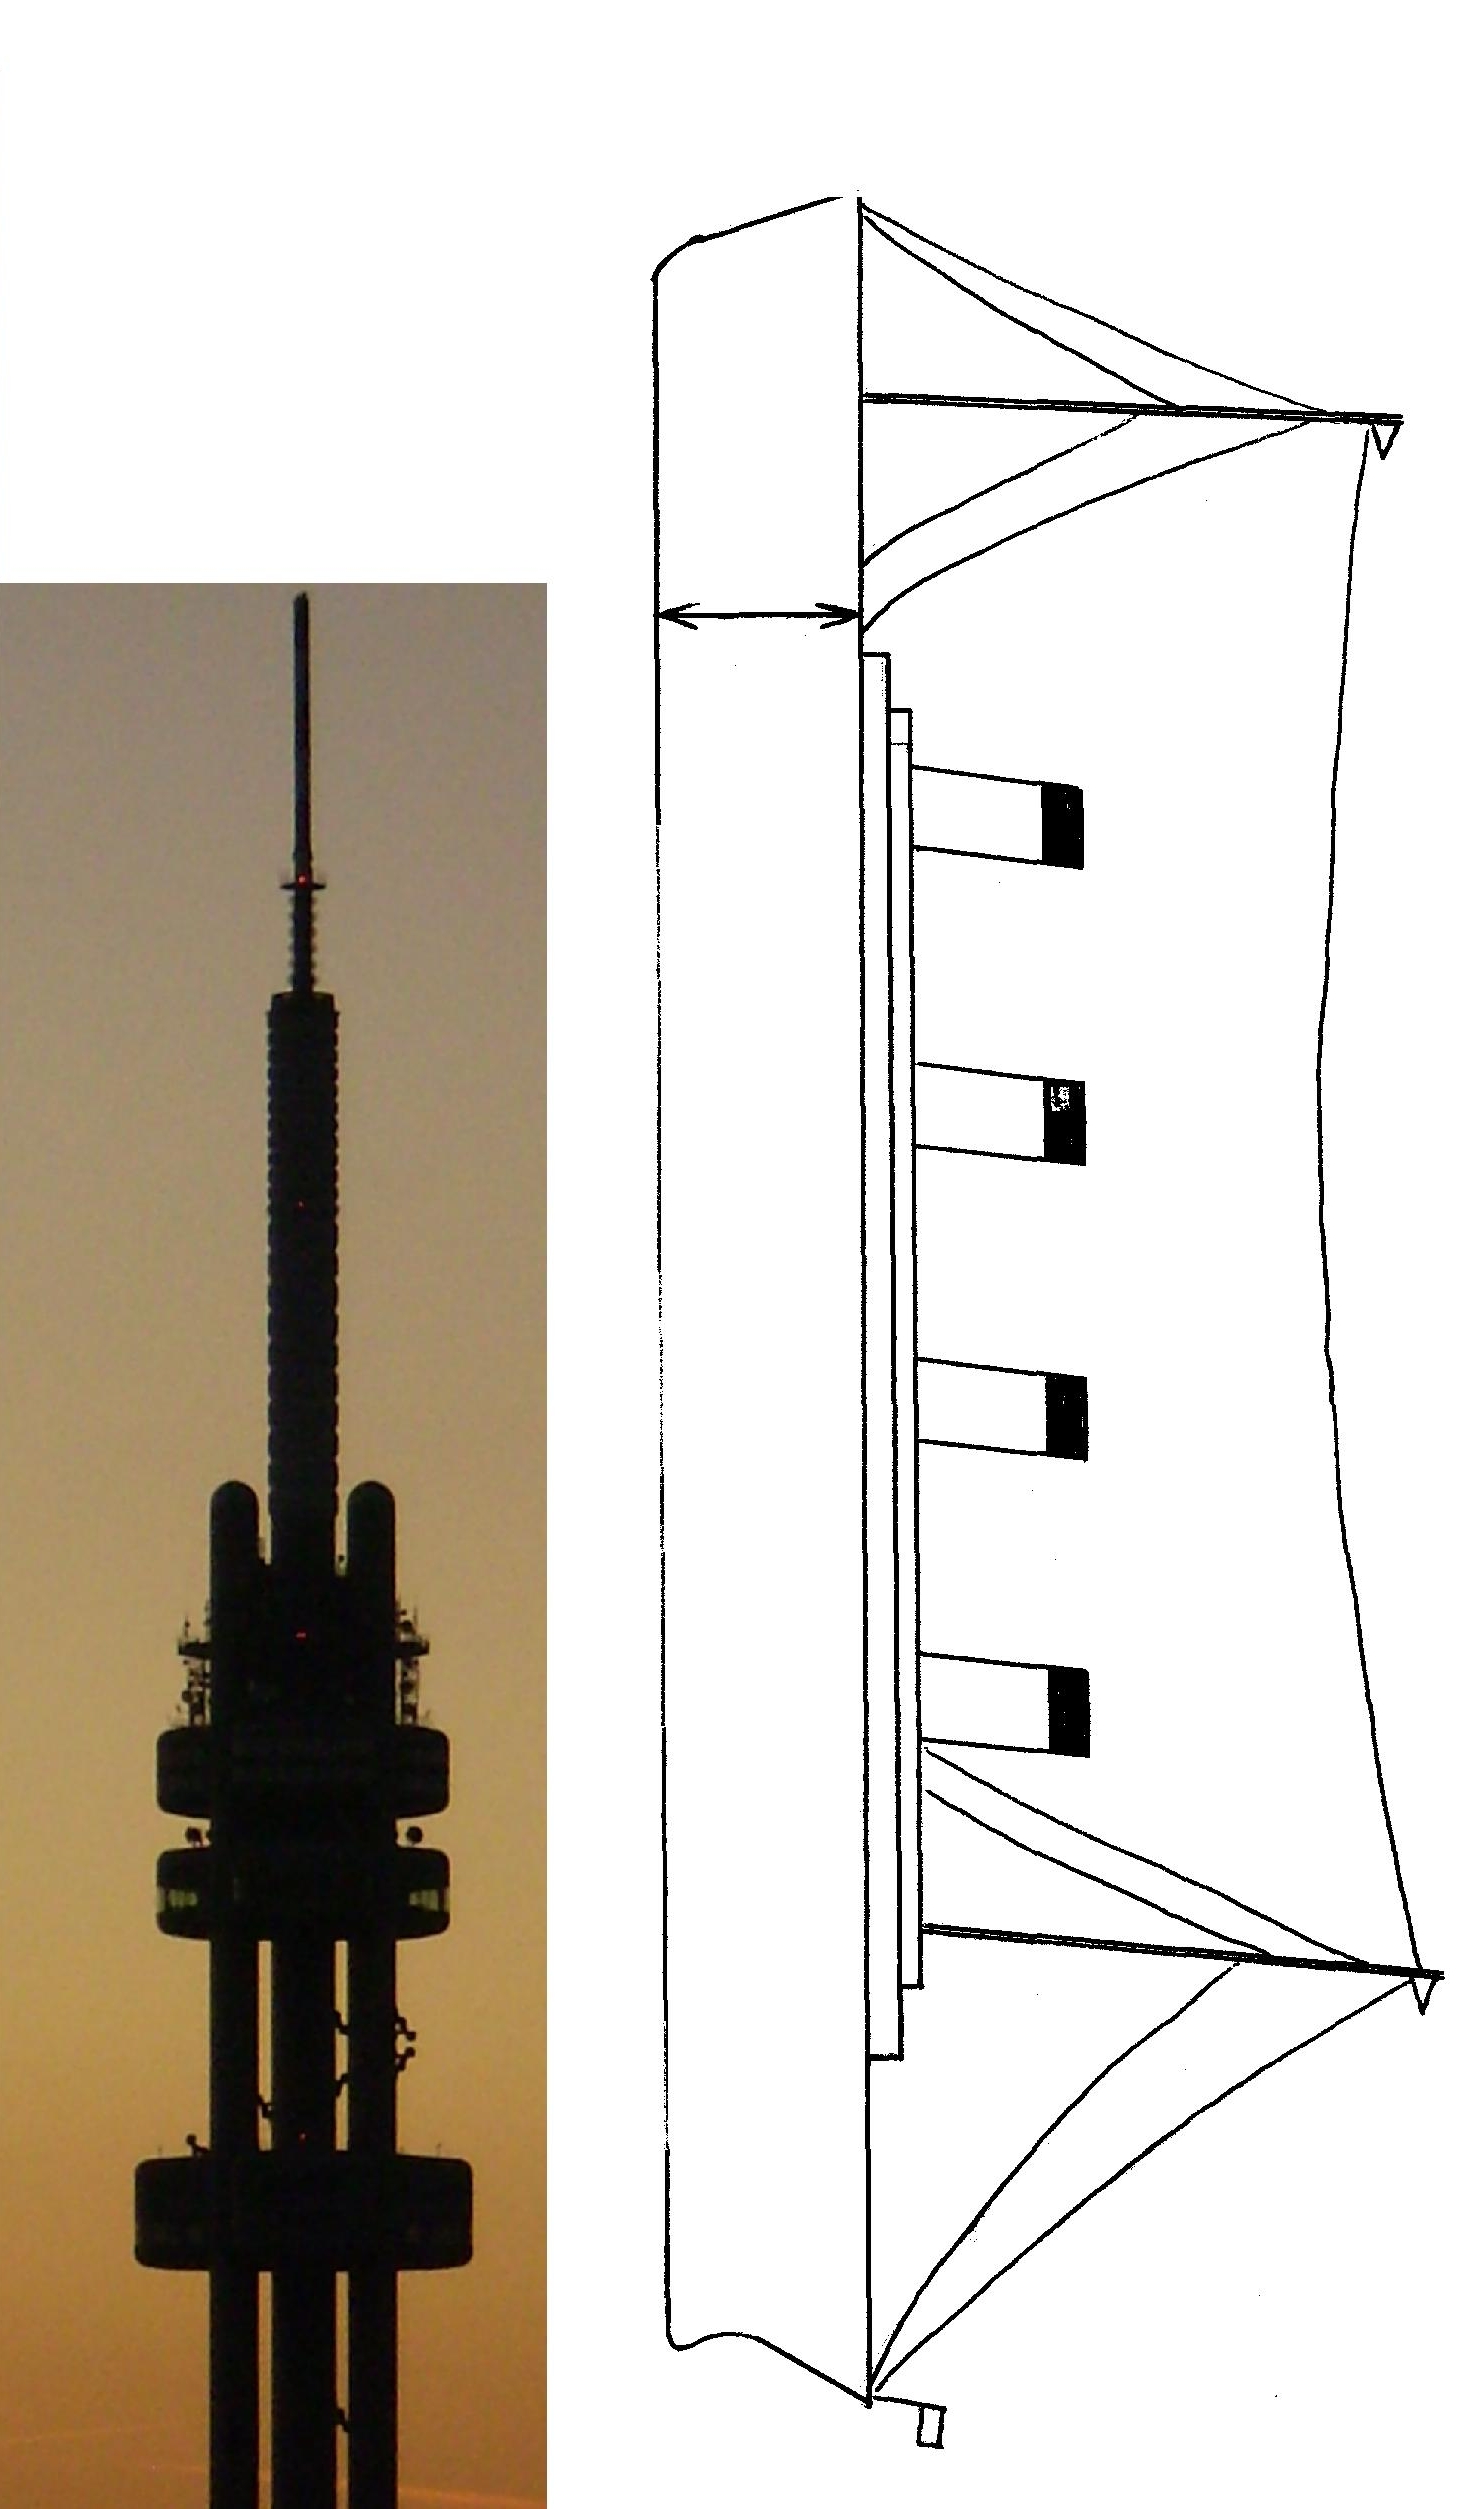 269 m dlouhý Titanic postavený na špici by převyšoval Žižkovskou věž (216 m)